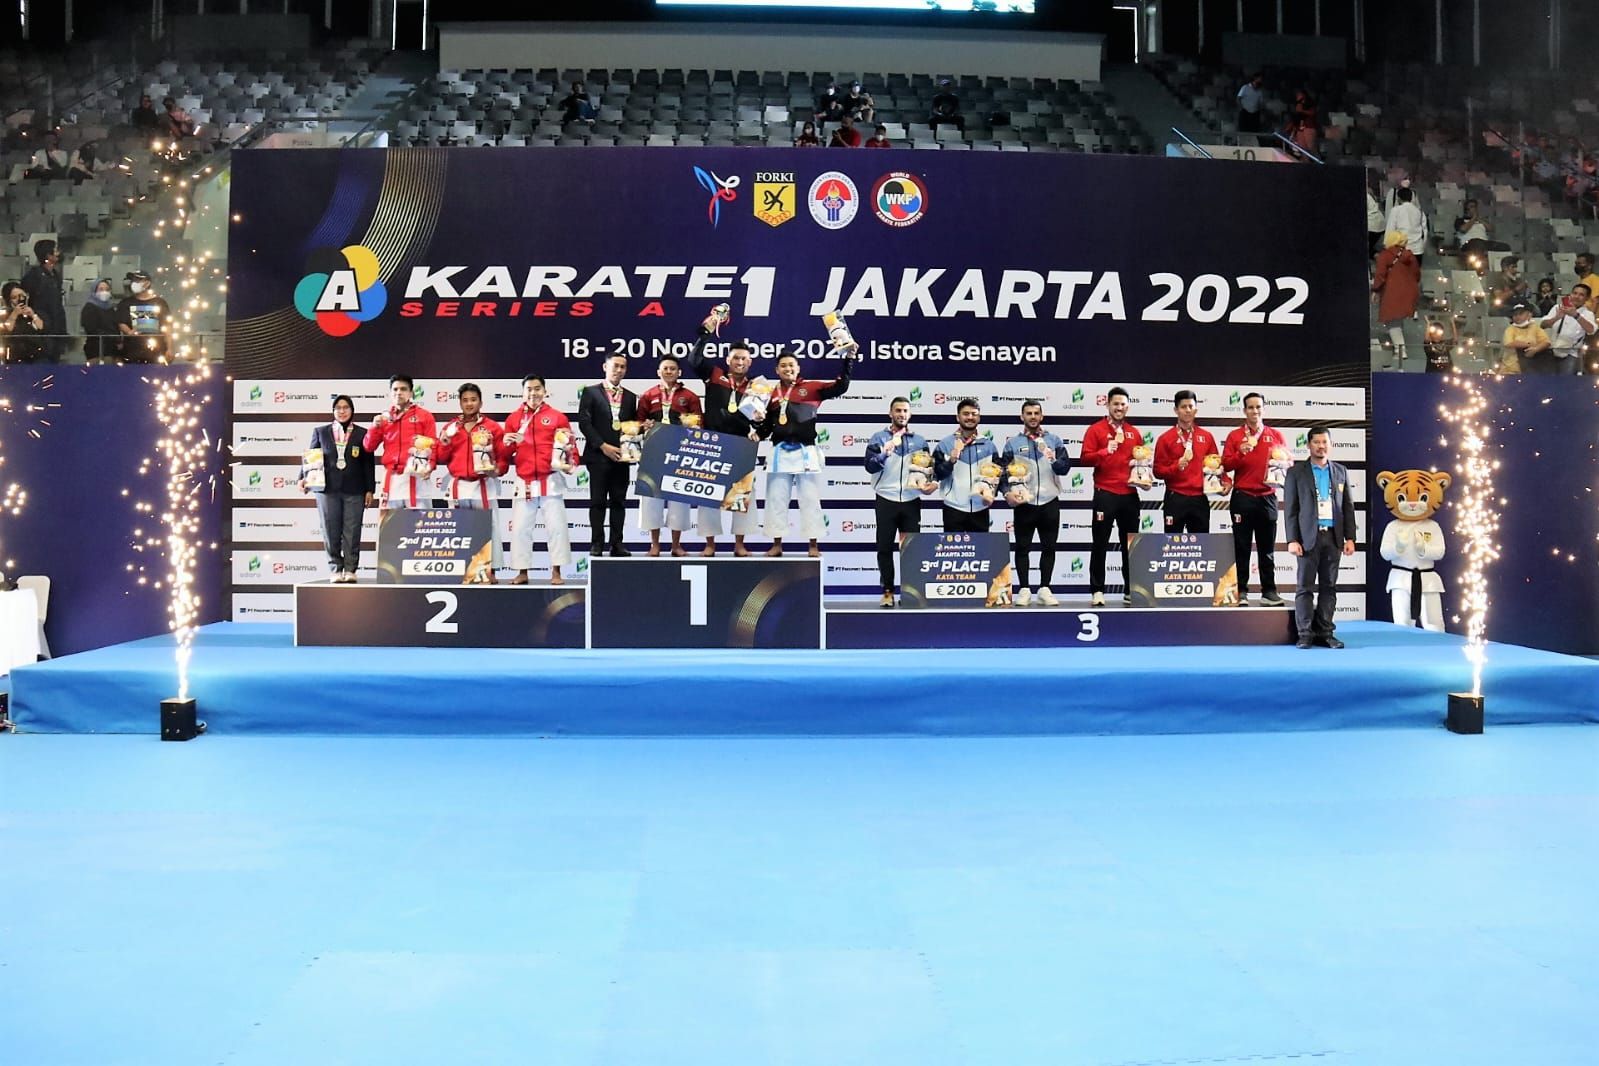 Podium juara nomor kata putra Kejuaraan Dunia Karate 1-Series A 2022 dimana emas dan perak berhasil diamankan Indonesia.